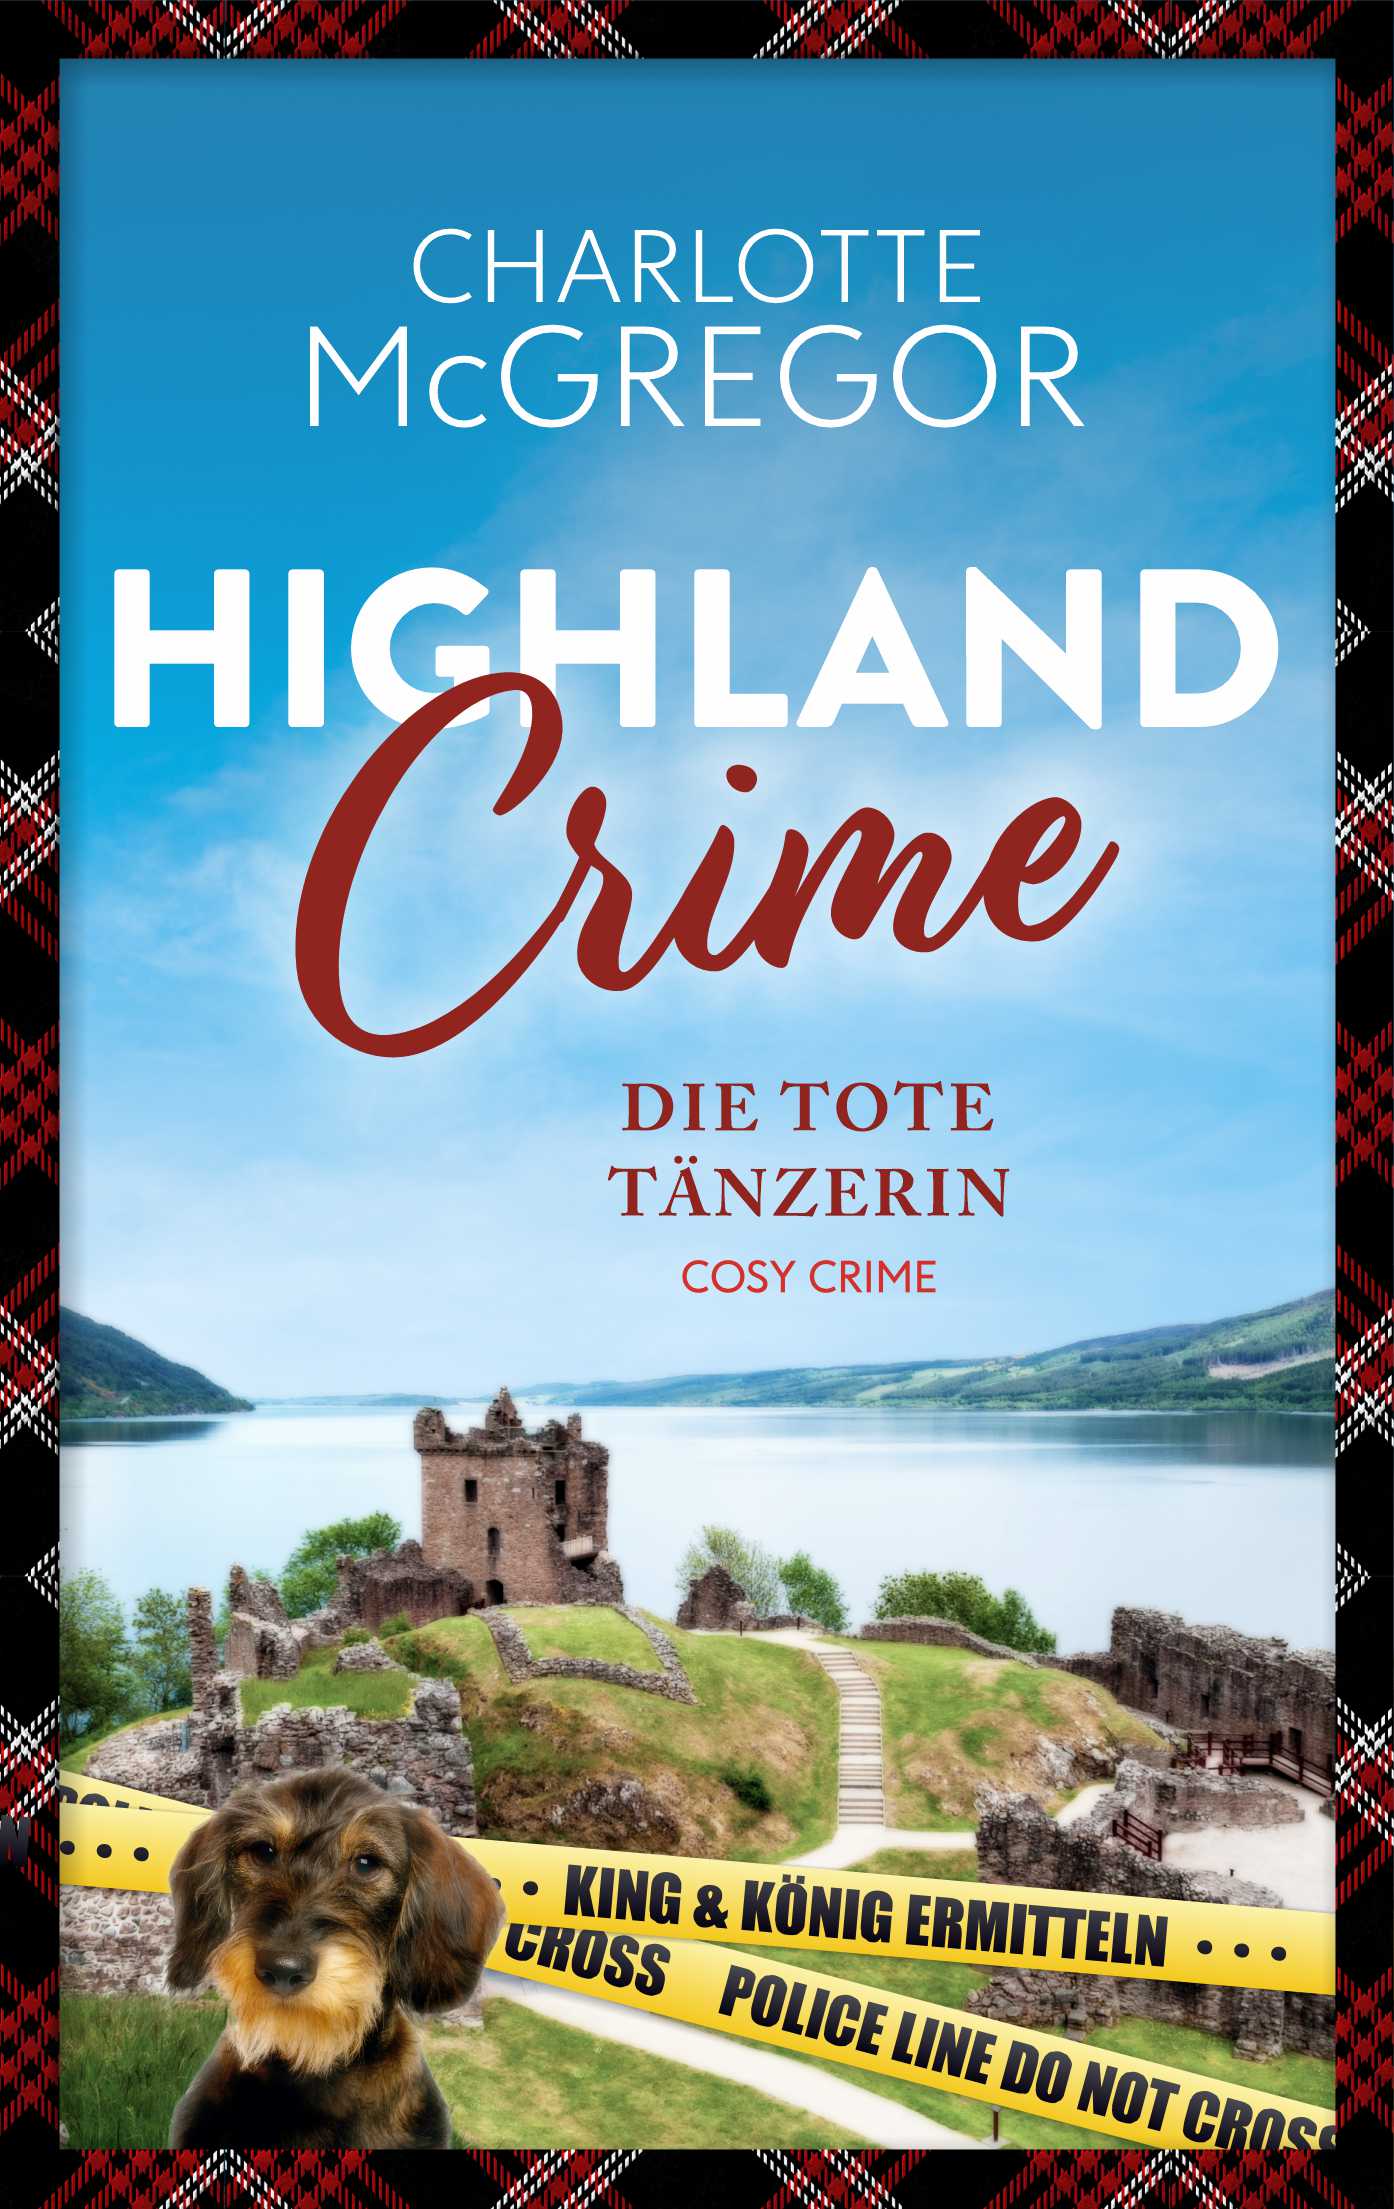 Highland Crime – Die tote Tänzerin